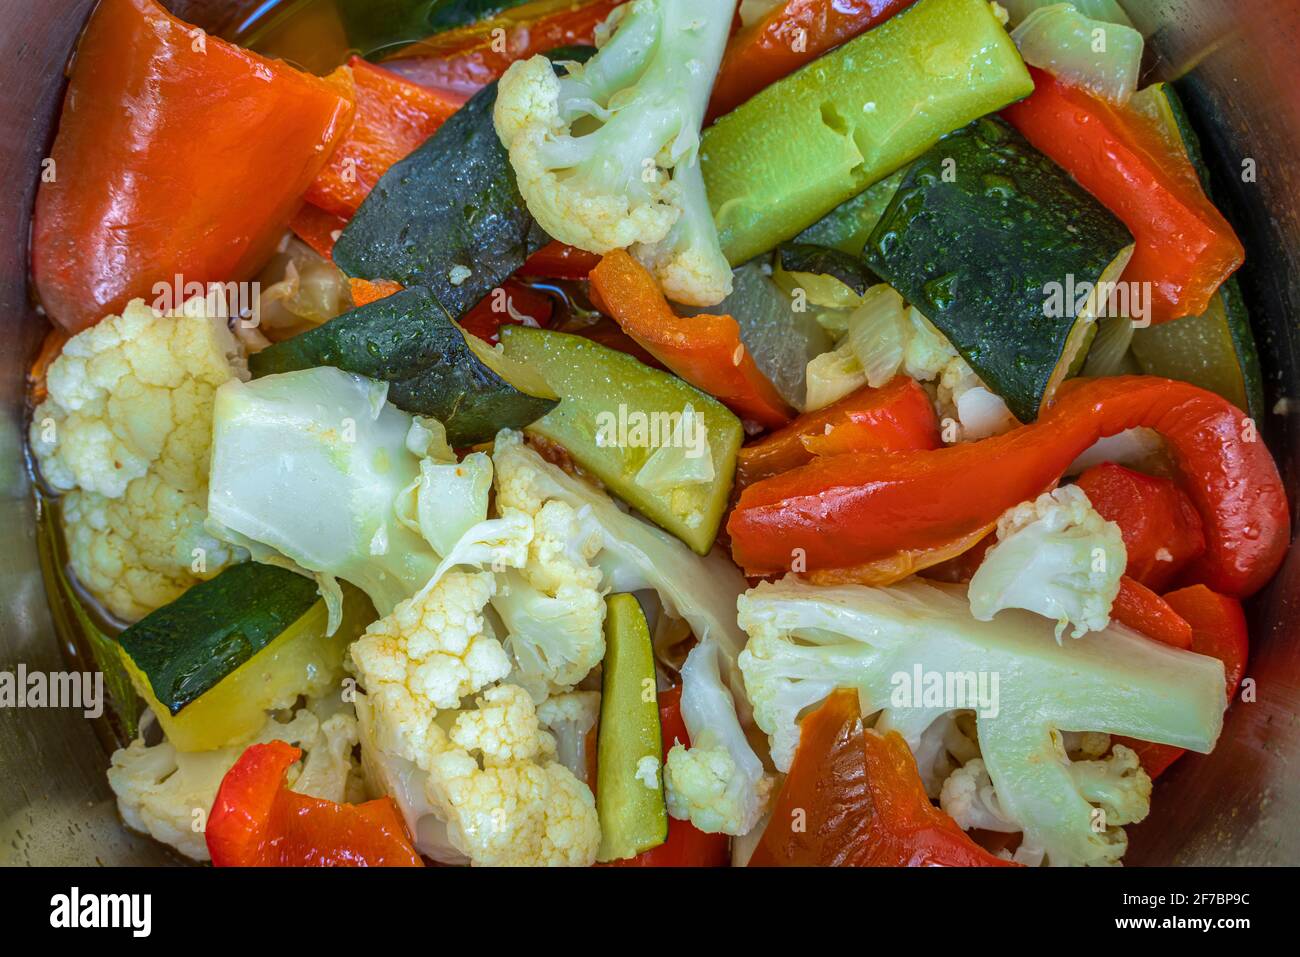 Salade mixte de légumes du jardin avec chou-fleur, poivrons et courgettes. Mangez des aliments sains. Abruzzes, Italie, Europe Banque D'Images